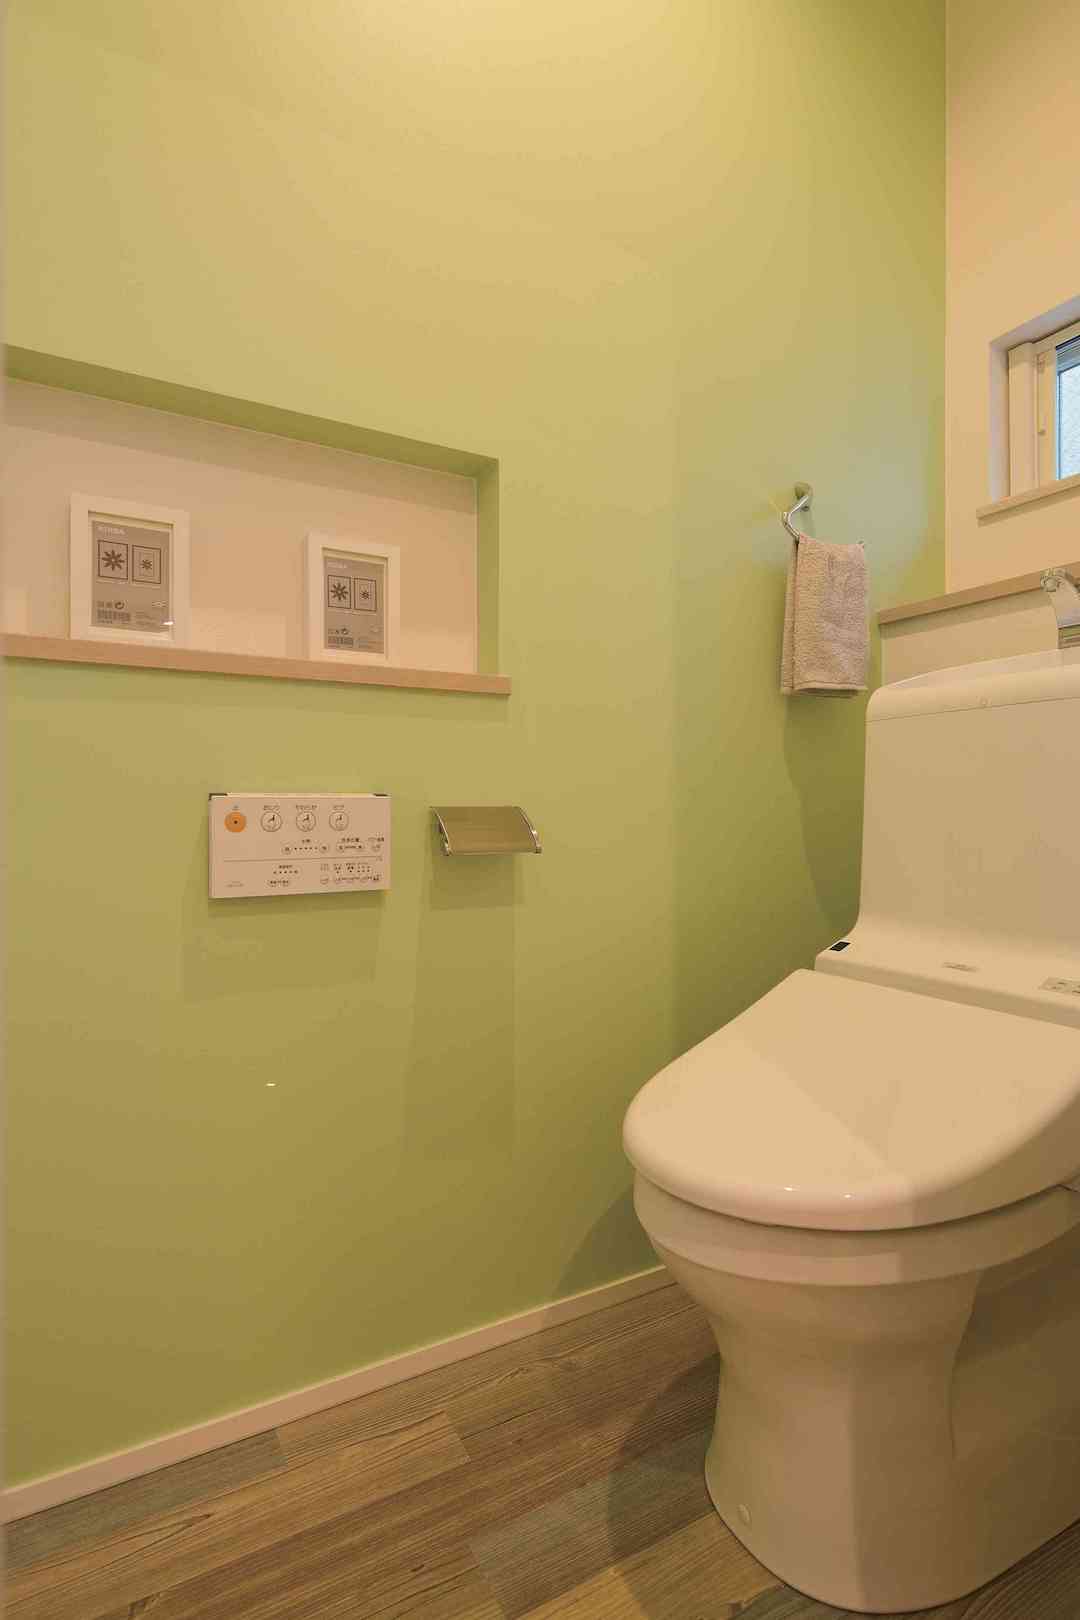 意外と遊べる 自分好みのトイレをつくろう 神奈川での注文住宅は山下建設 イメージをカタチにする技術力で思いっきりmystyleの家を提案